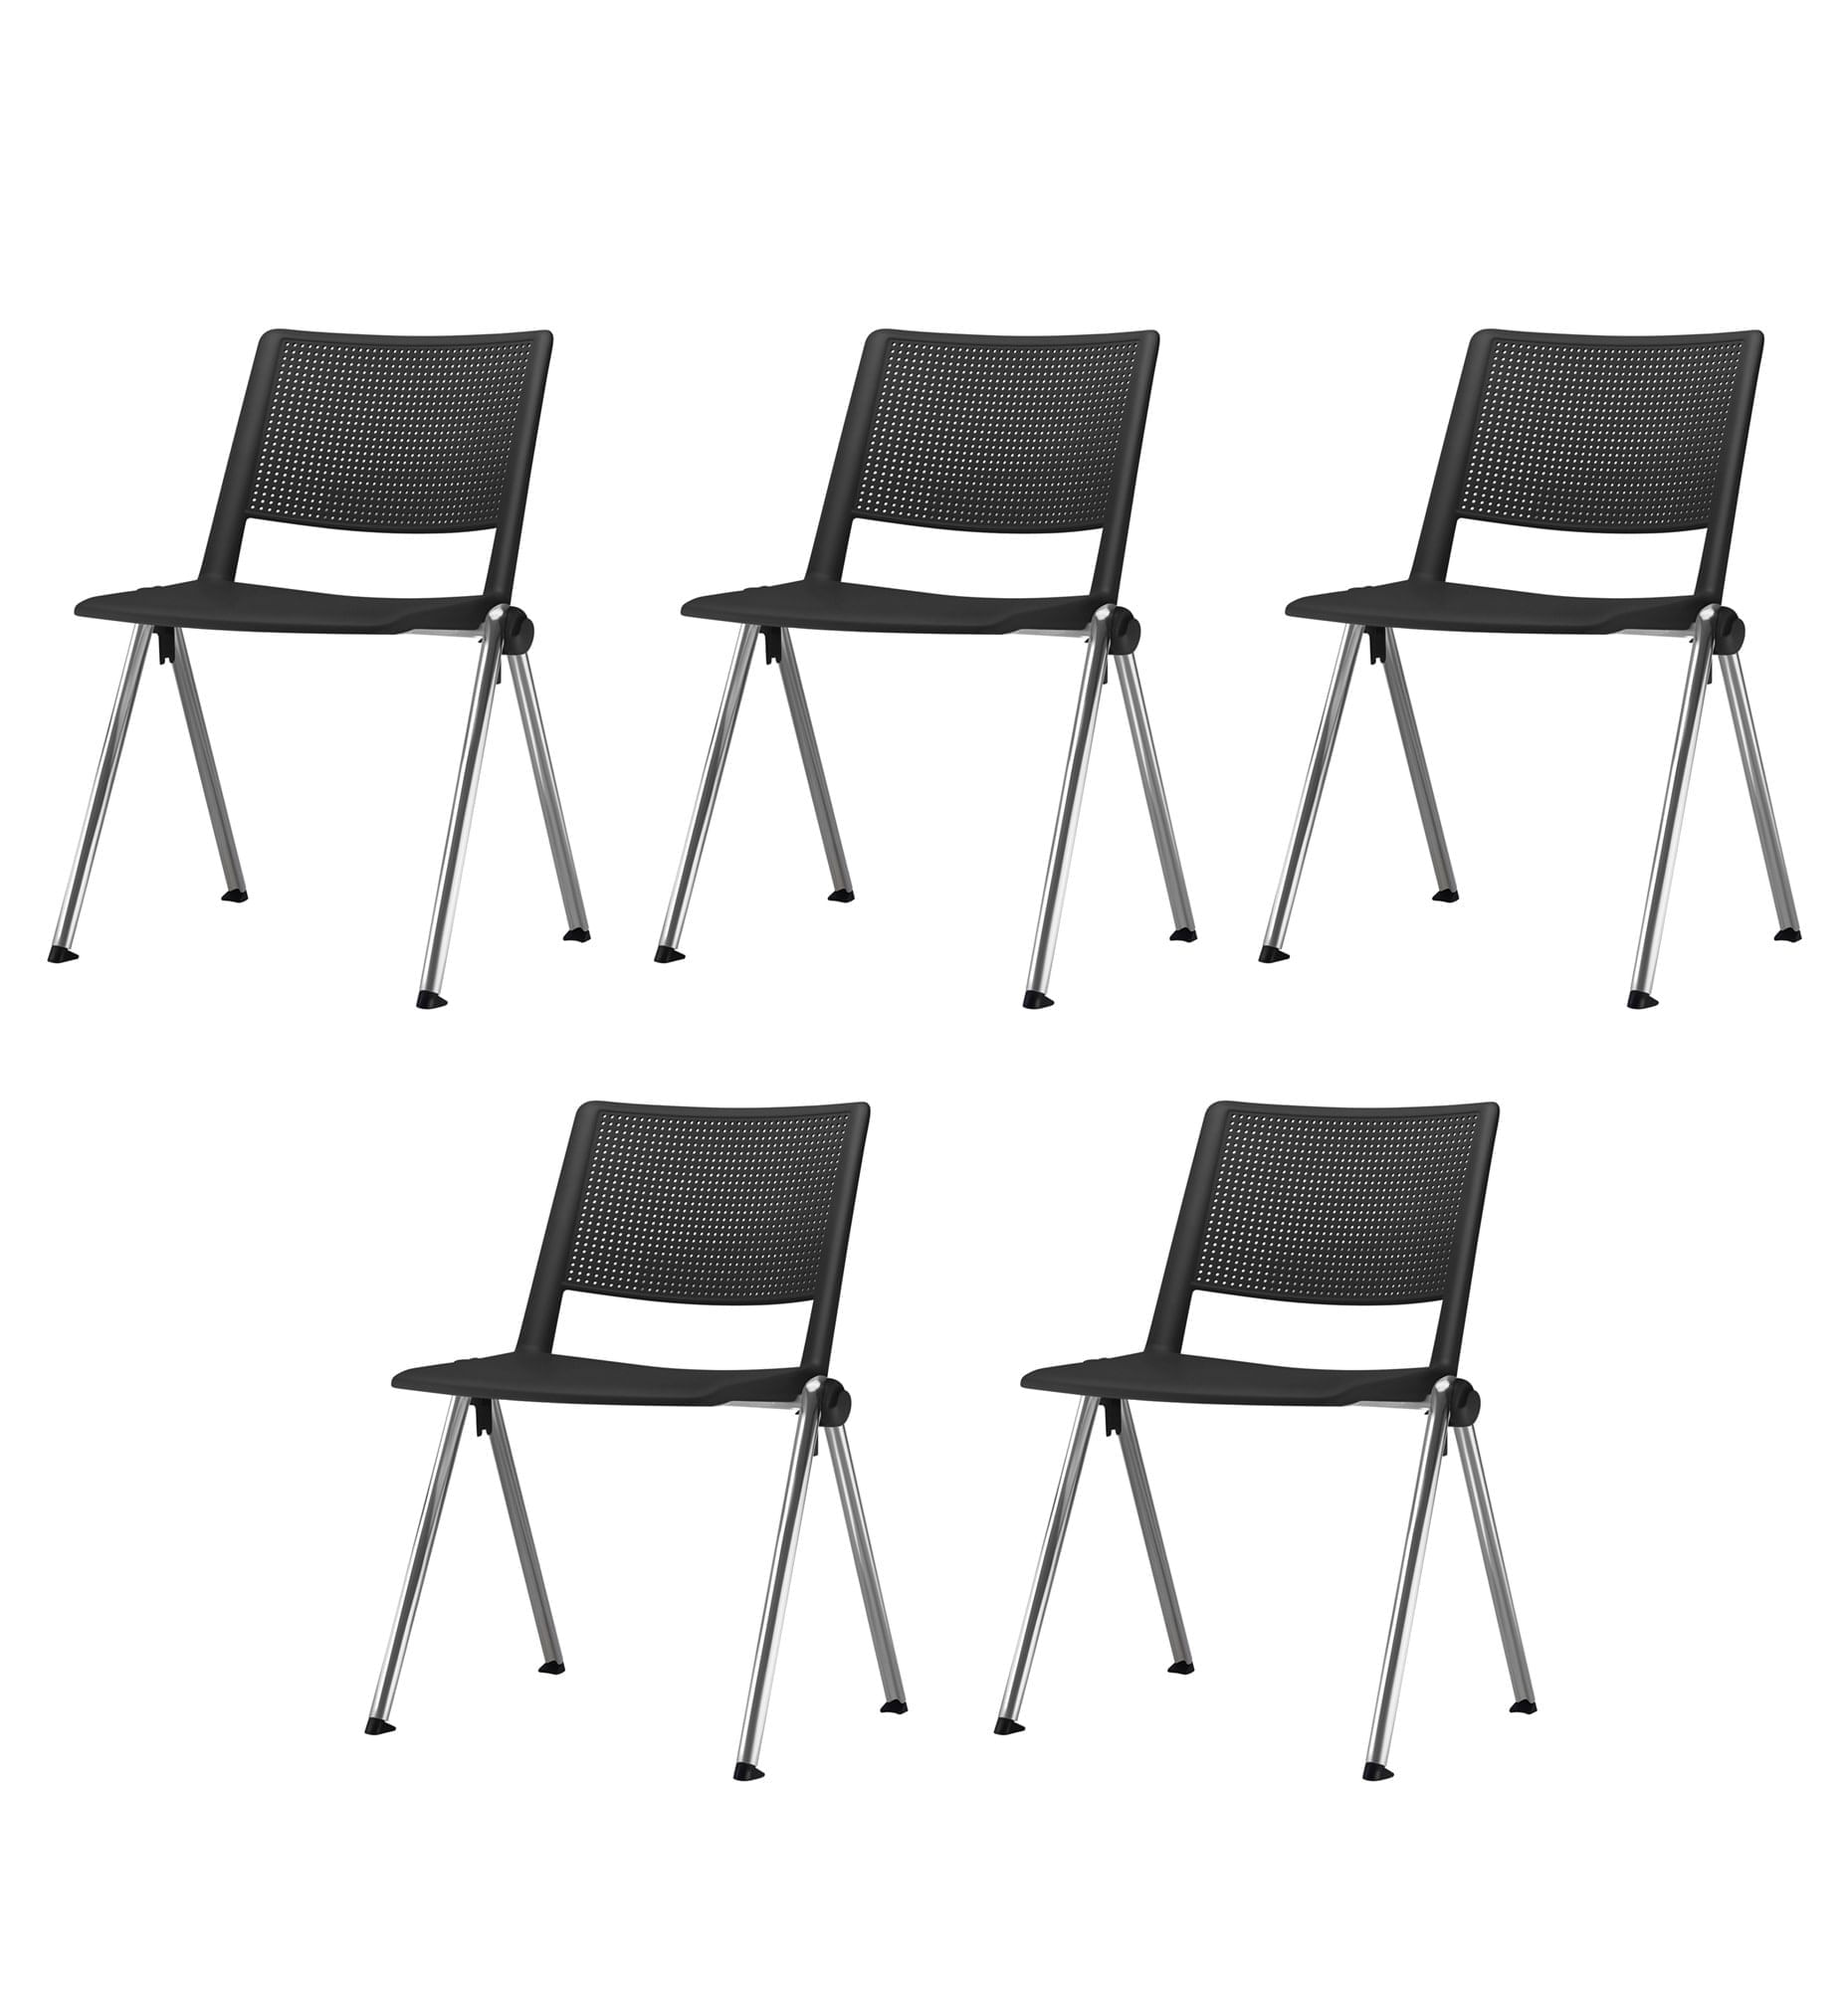 Kit 5 Cadeiras Up Assento Preto Base Fixa Cromada - 57832